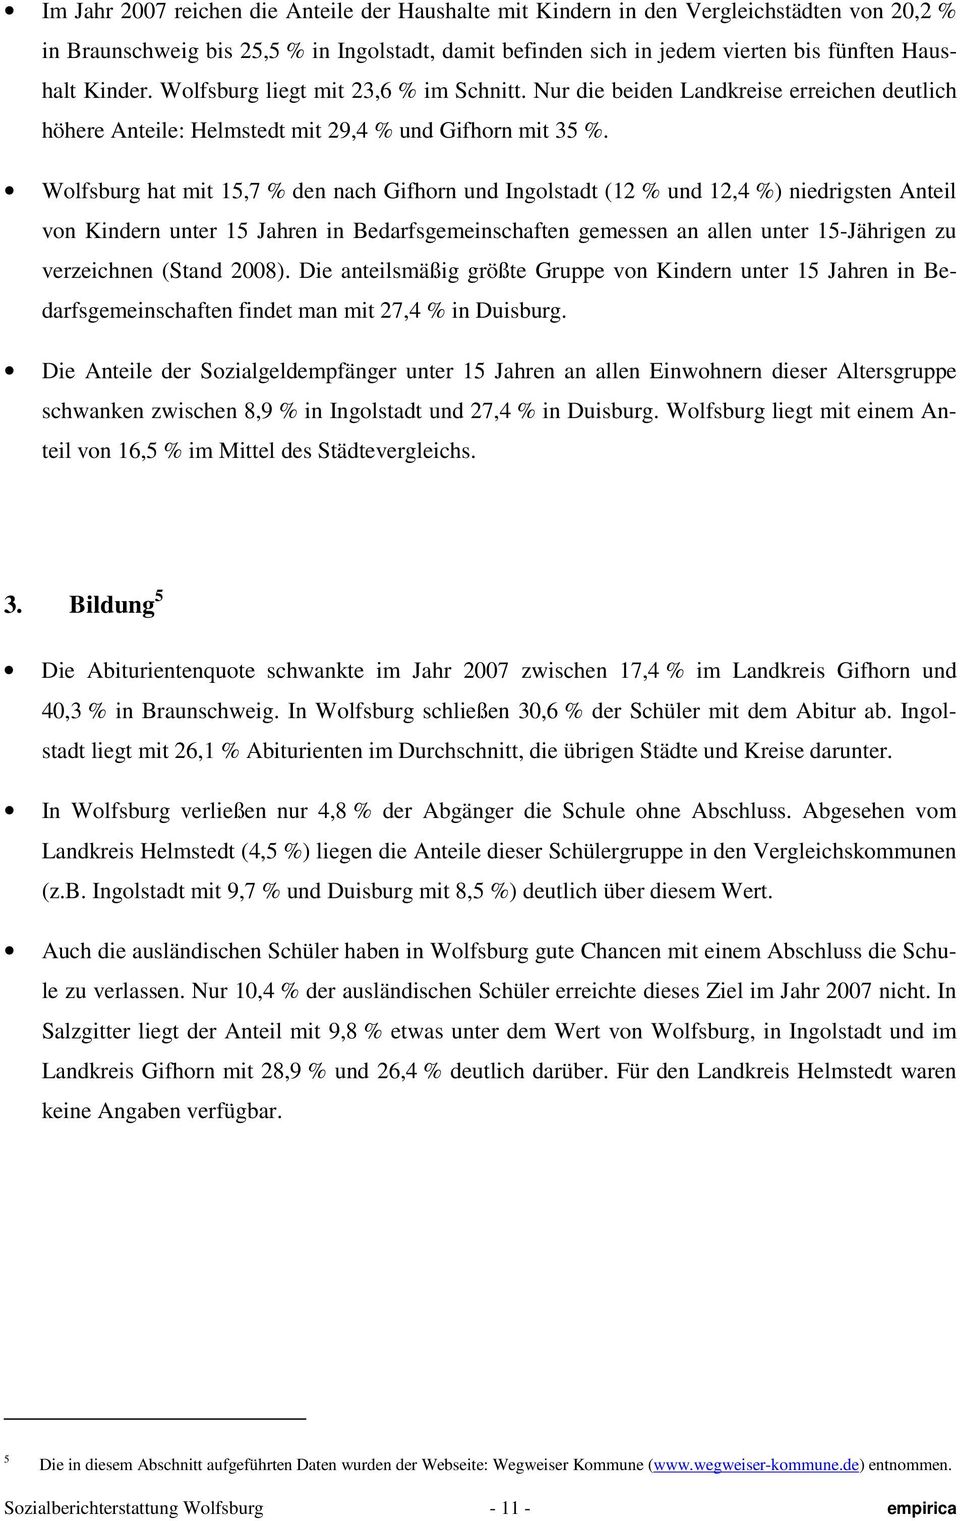 Wolfsburg hat mit 15,7 % den nach Gifhorn und Ingolstadt (12 % und 12,4 %) niedrigsten Anteil von Kindern unter 15 Jahren in Bedarfsgemeinschaften gemessen an allen unter 15-Jährigen zu verzeichnen